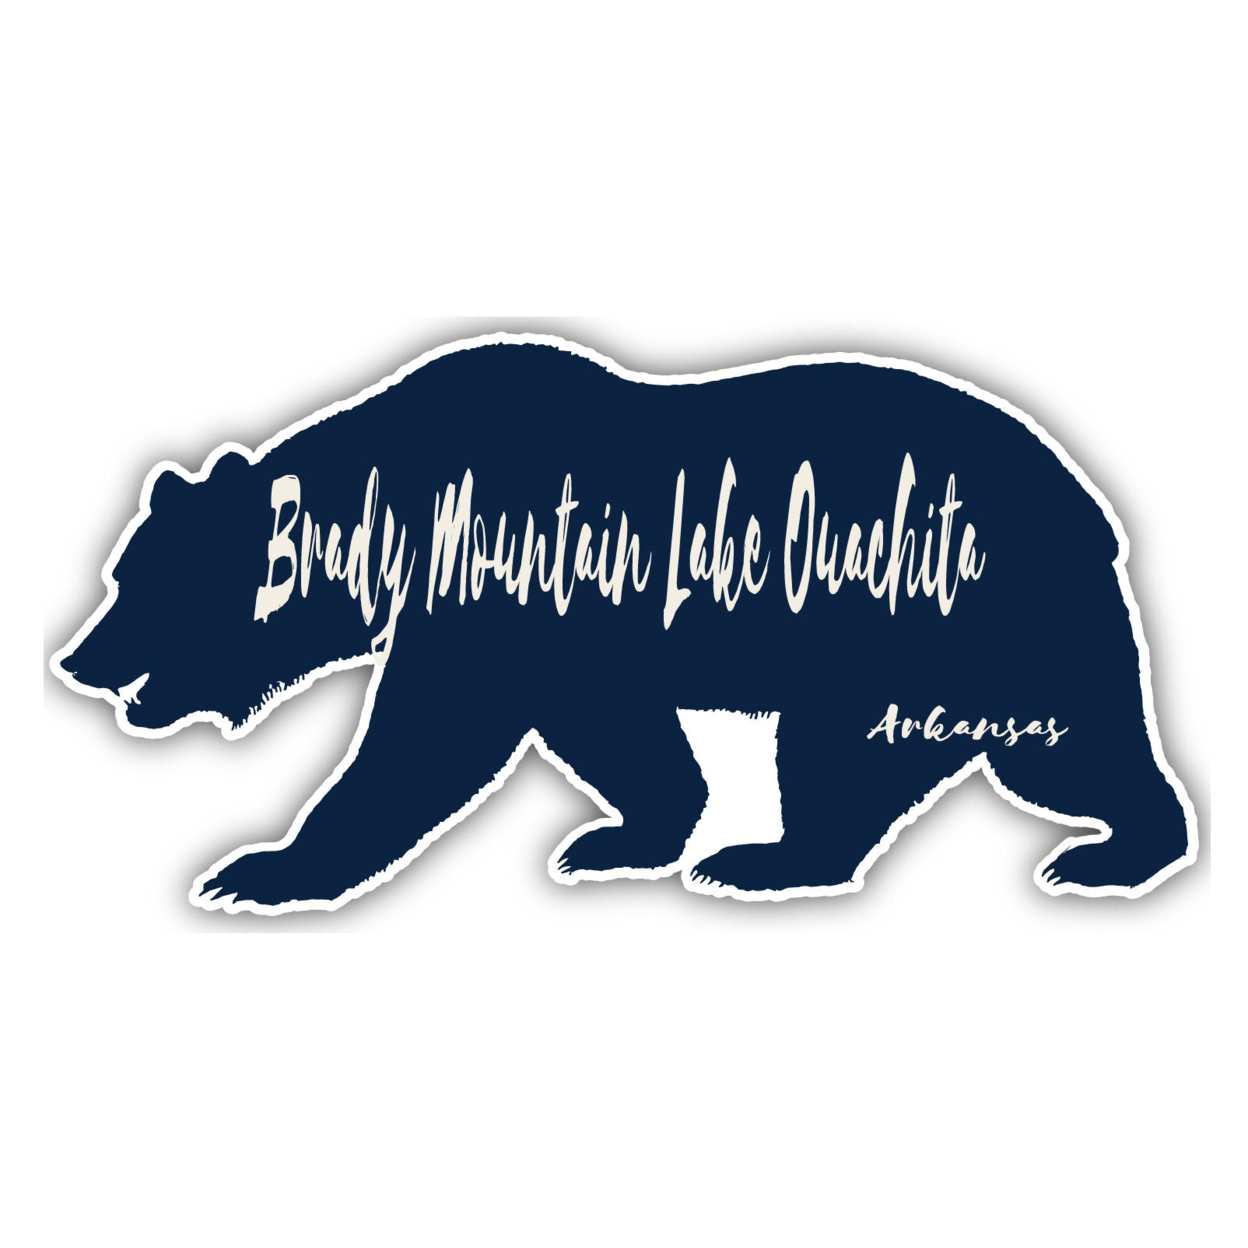 Brady Mountain Lake Ouachita Arkansas Souvenir Decorative Stickers (Choose Theme And Size) - 4-Pack, 6-Inch, Tent